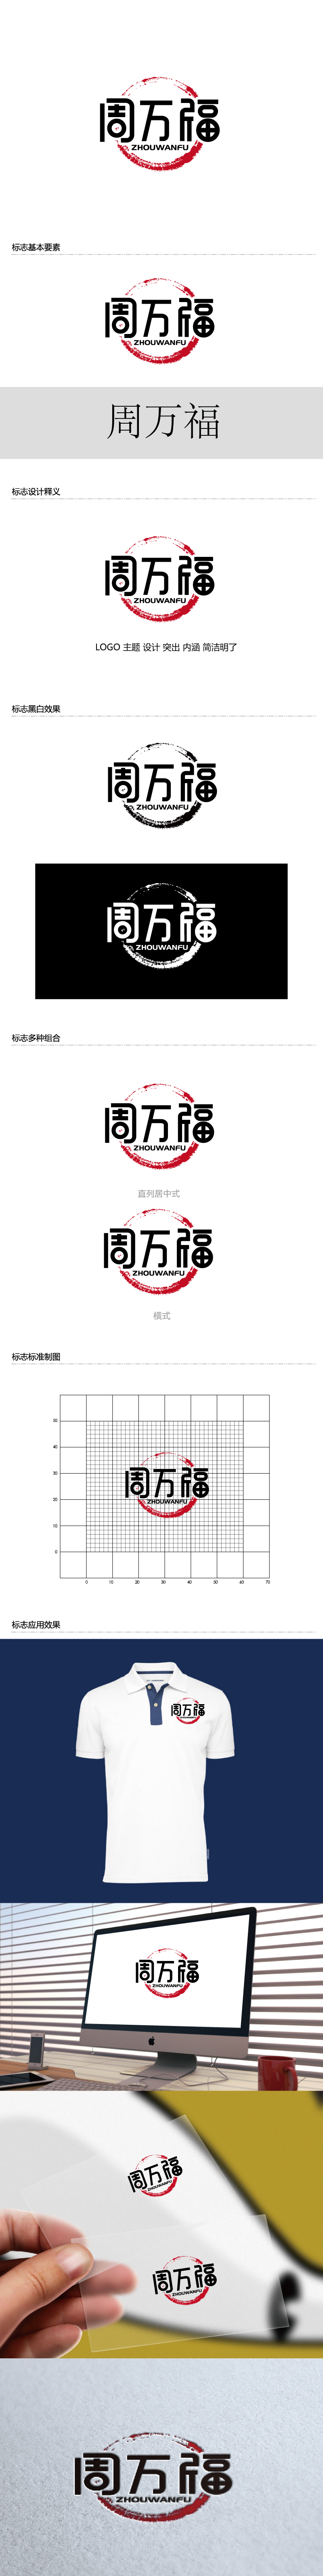 张俊的周万福logo设计